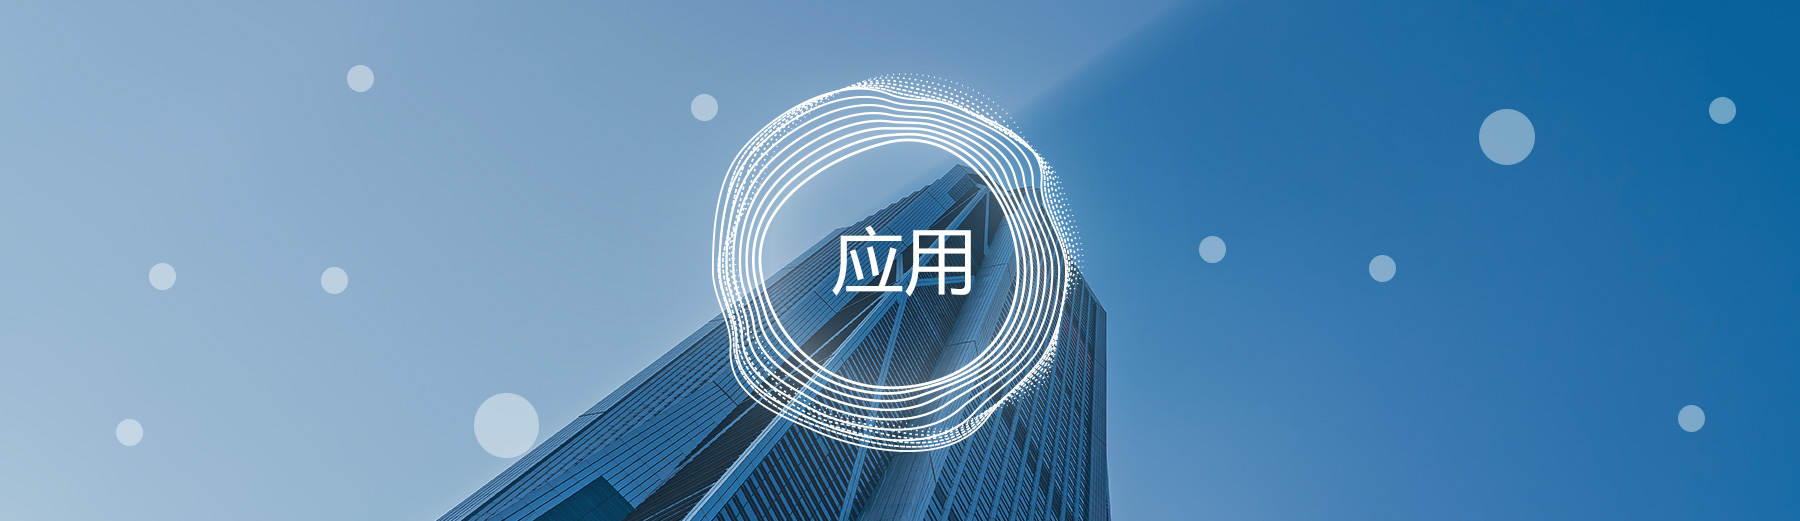 关于当前产品2088ceo彩票网·(中国)官方网站的成功案例等相关图片